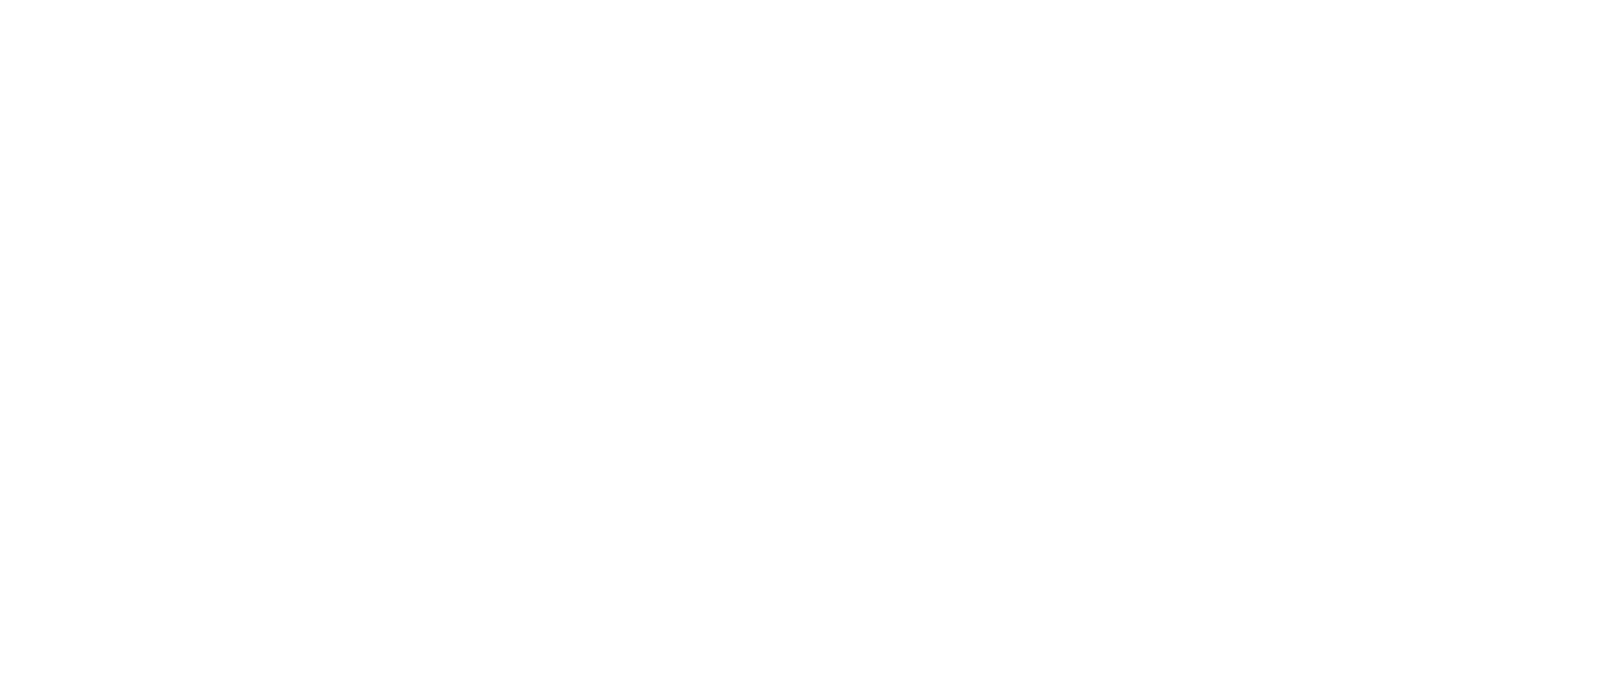 CapitaLand Ascott Trust logo grand pour les fonds sombres (PNG transparent)